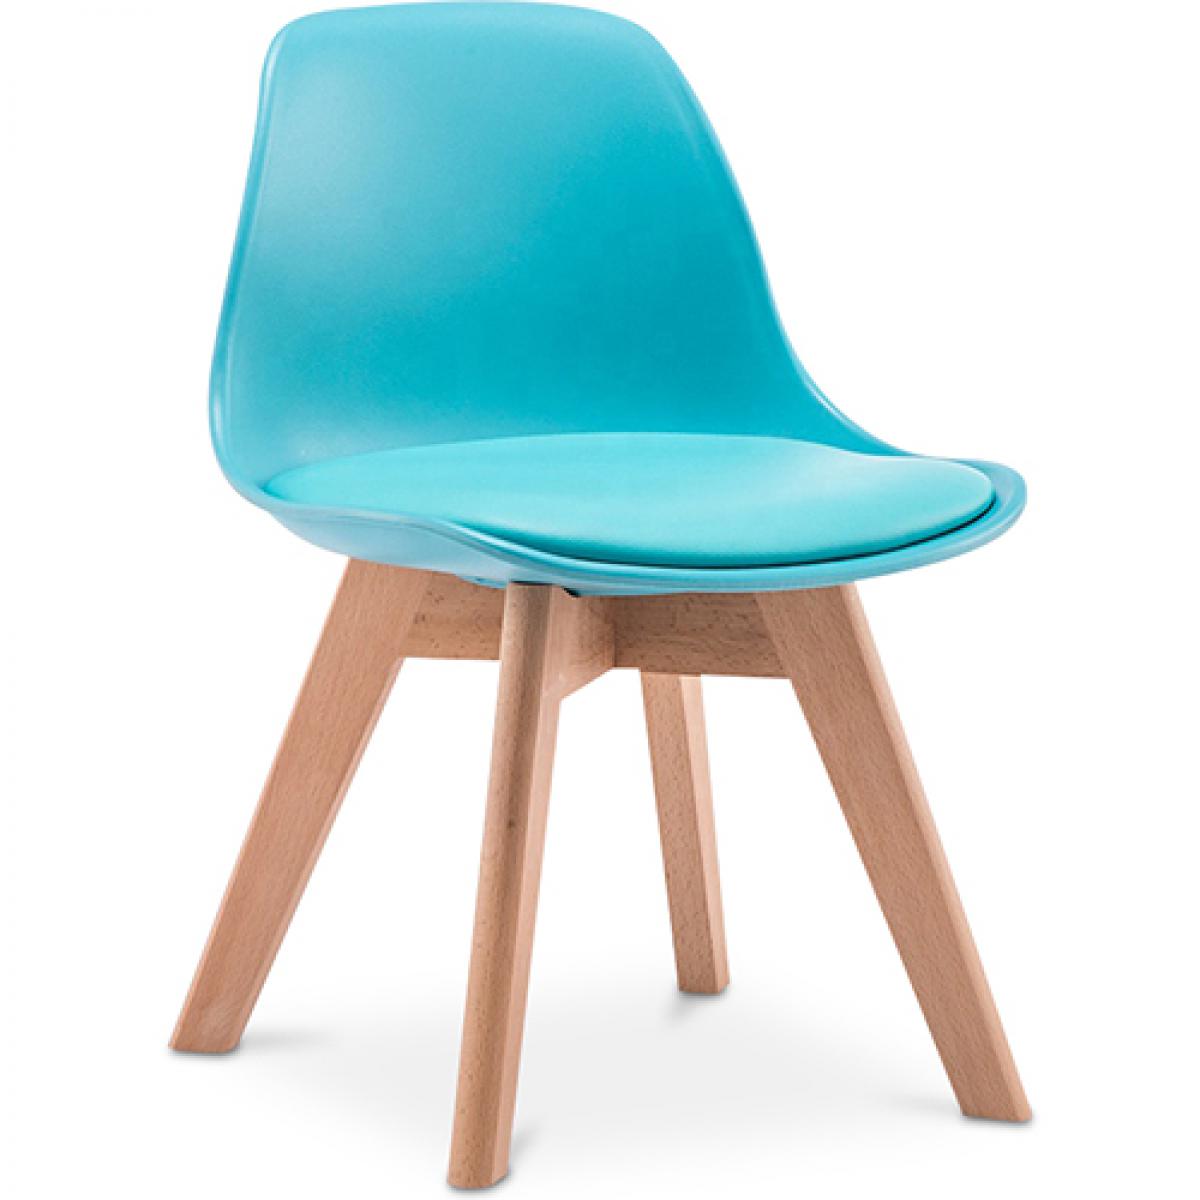 Privatefloor - Chaise d'enfant en bois et polypropylene rembourrée - Chaises